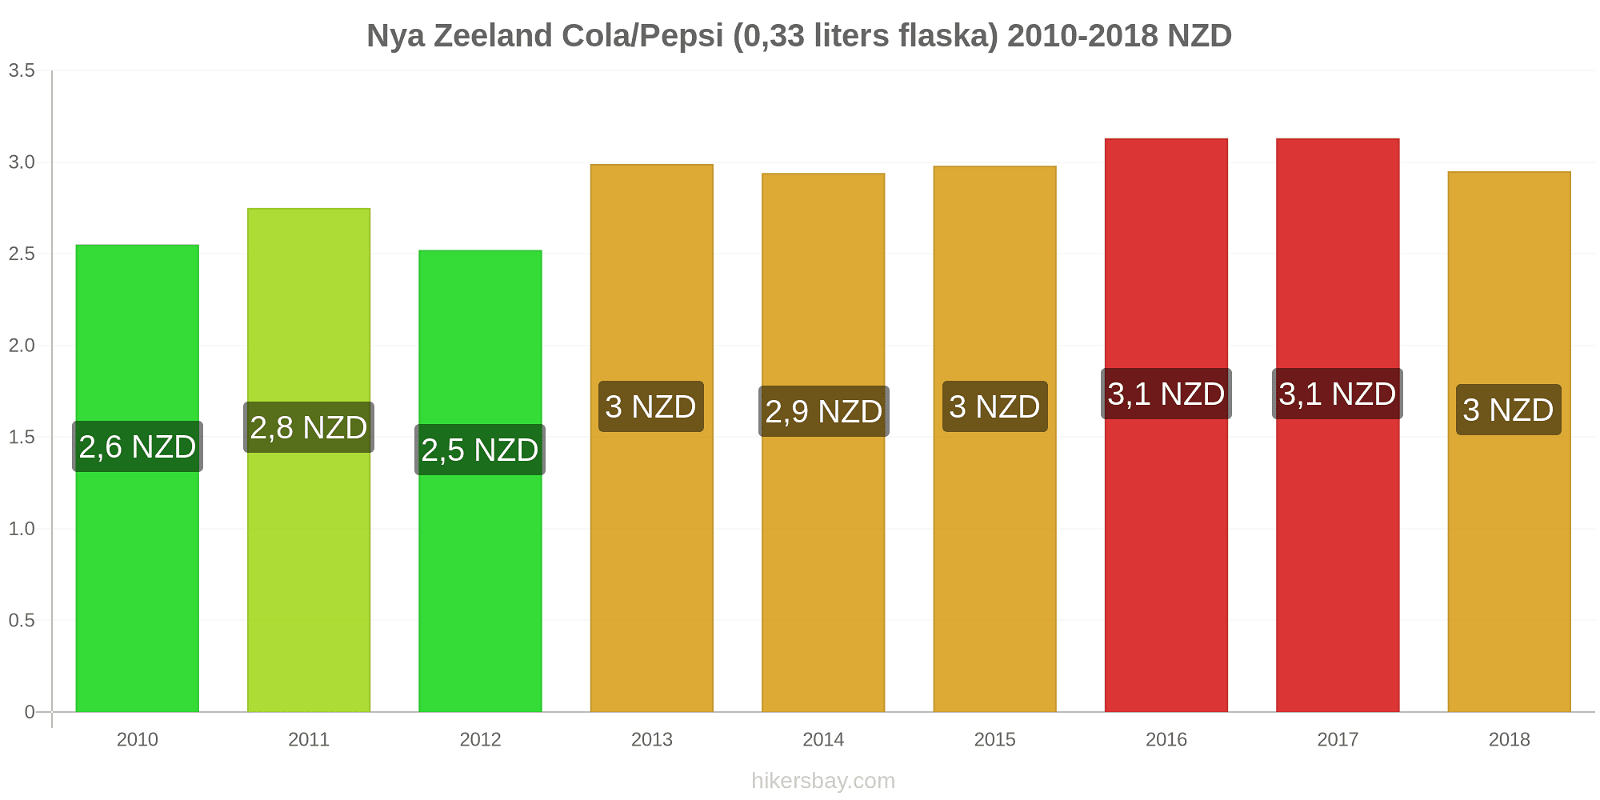 Nya Zeeland prisändringar Coca-Cola/Pepsi (0.33 liters flaska) hikersbay.com